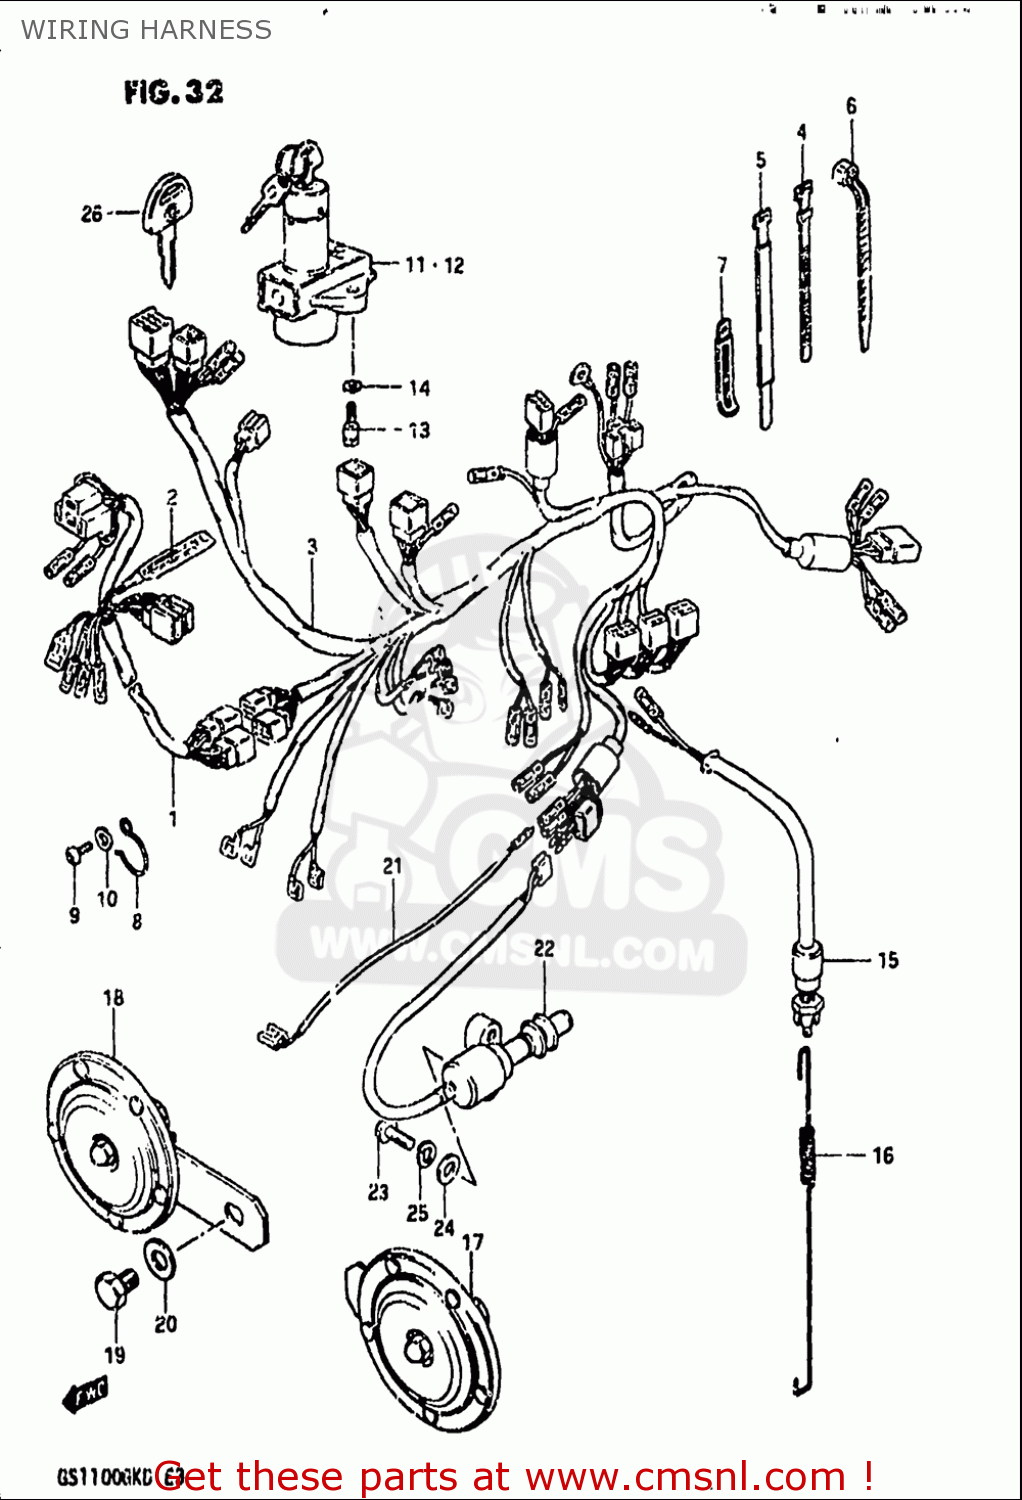 Suzuki Gs1100 Gk 1982-1983 (usa) Wiring Harness ... simple wiring diagram for suzuki gs1100 